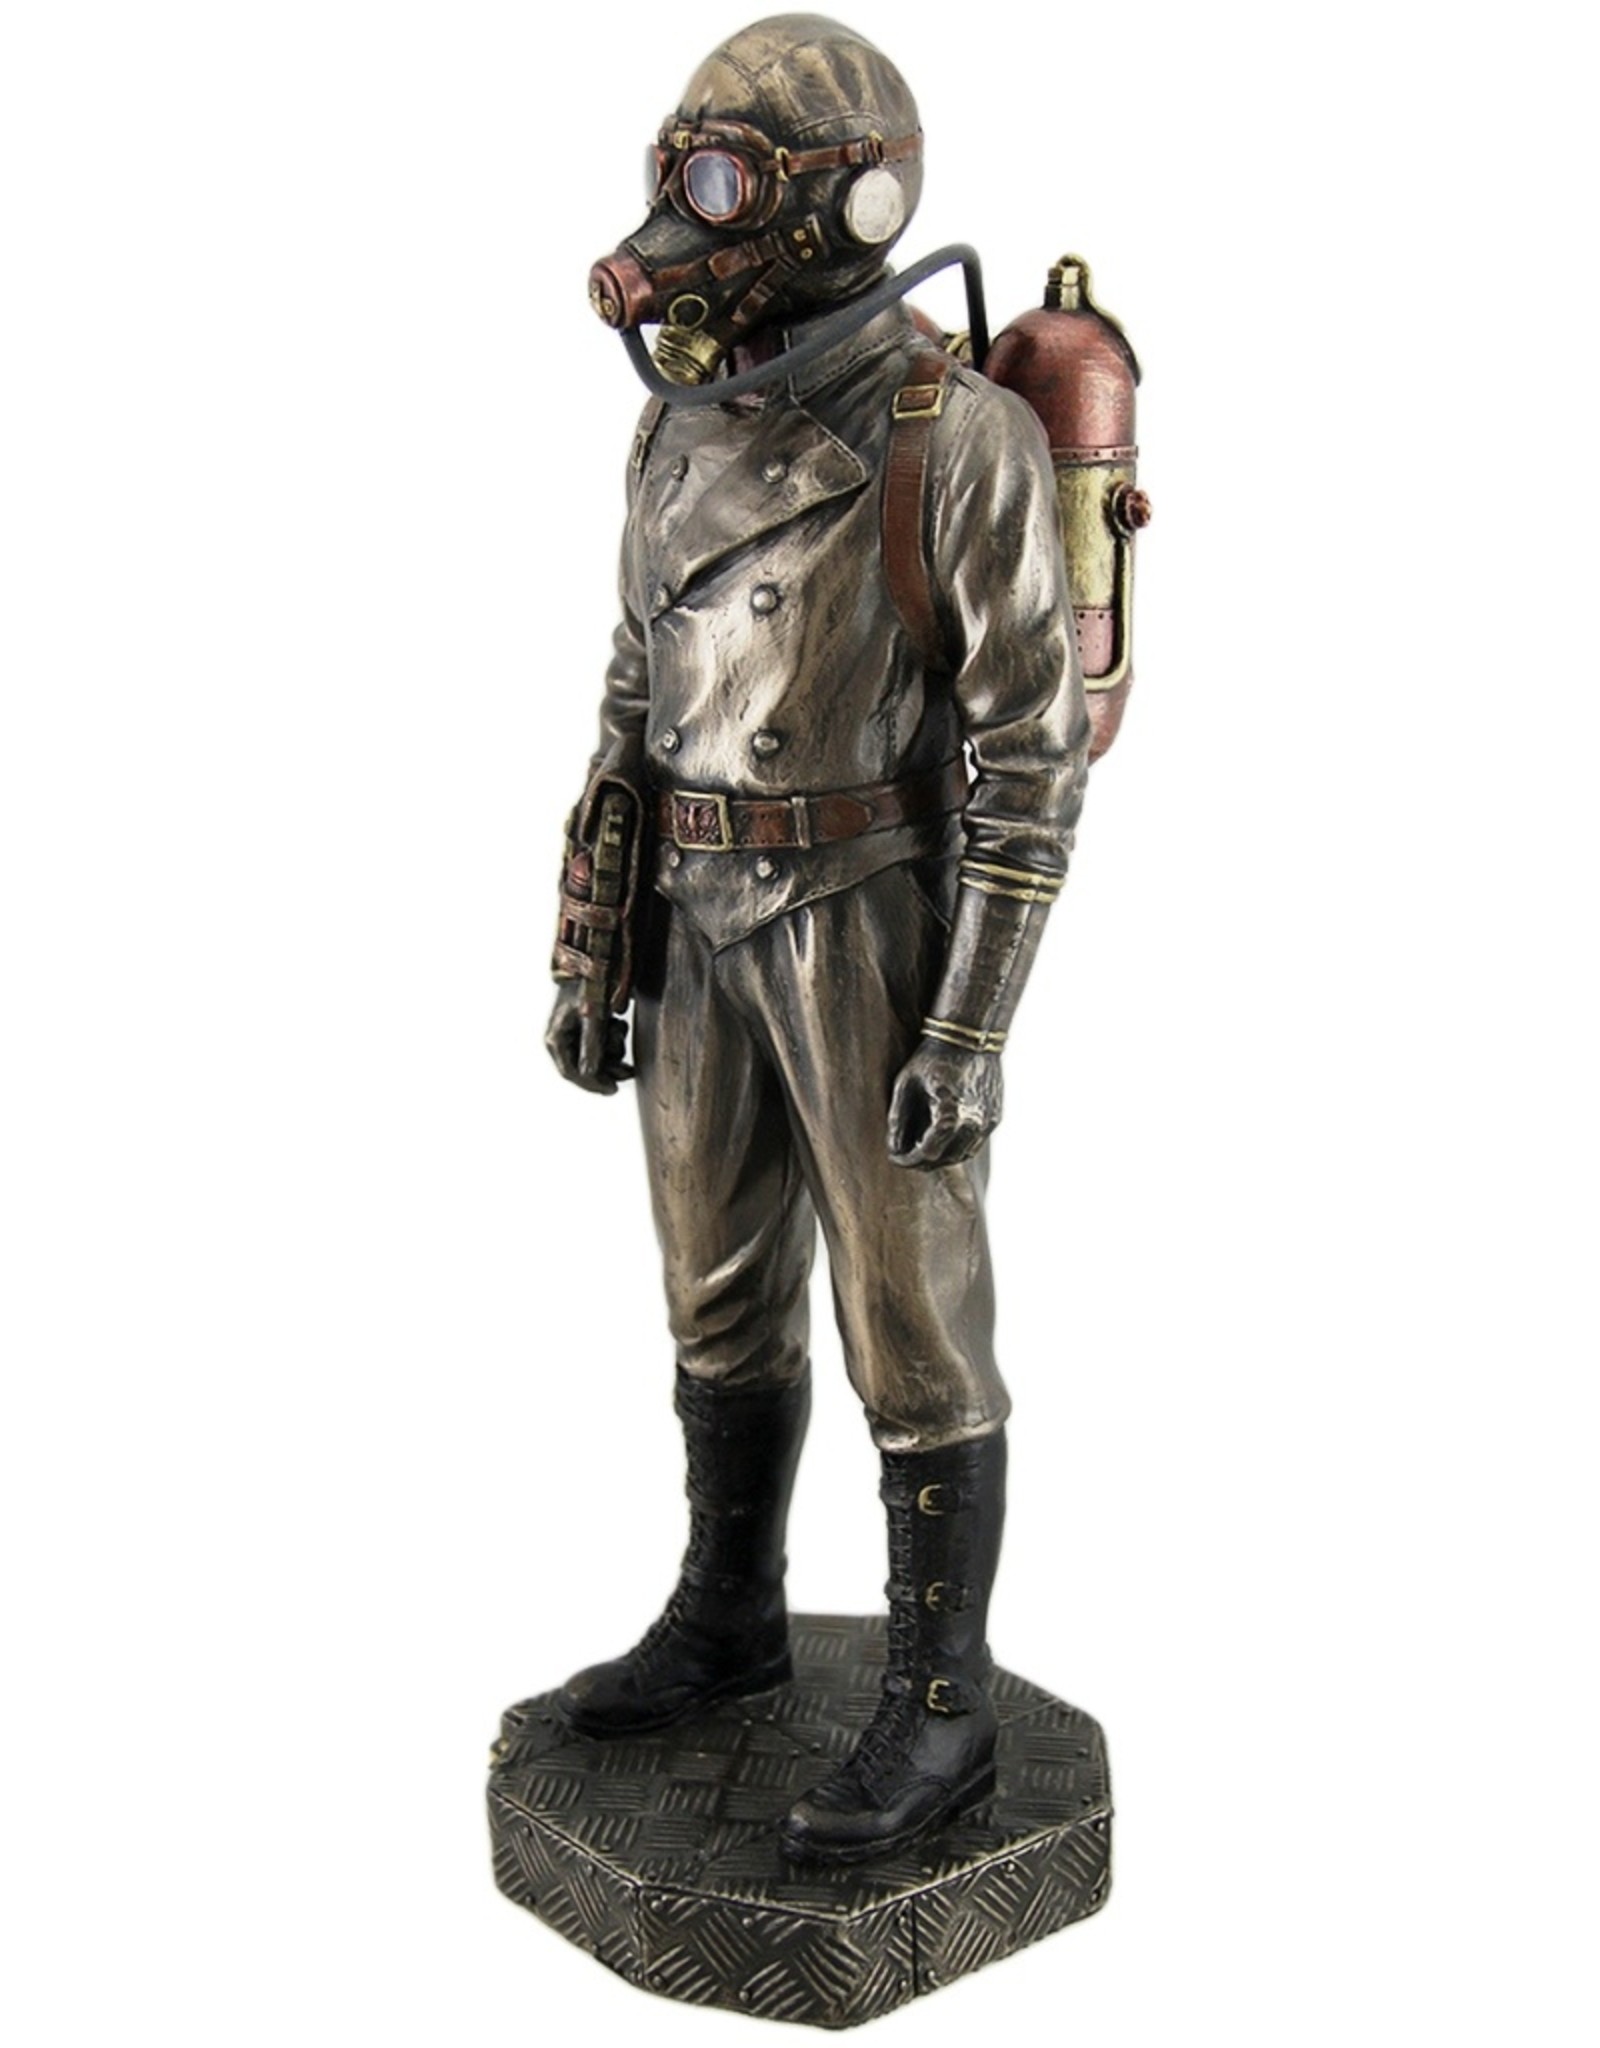 Veronese Design Giftware & Lifestyle - Steampunk Aeronaut Bronzed figurine